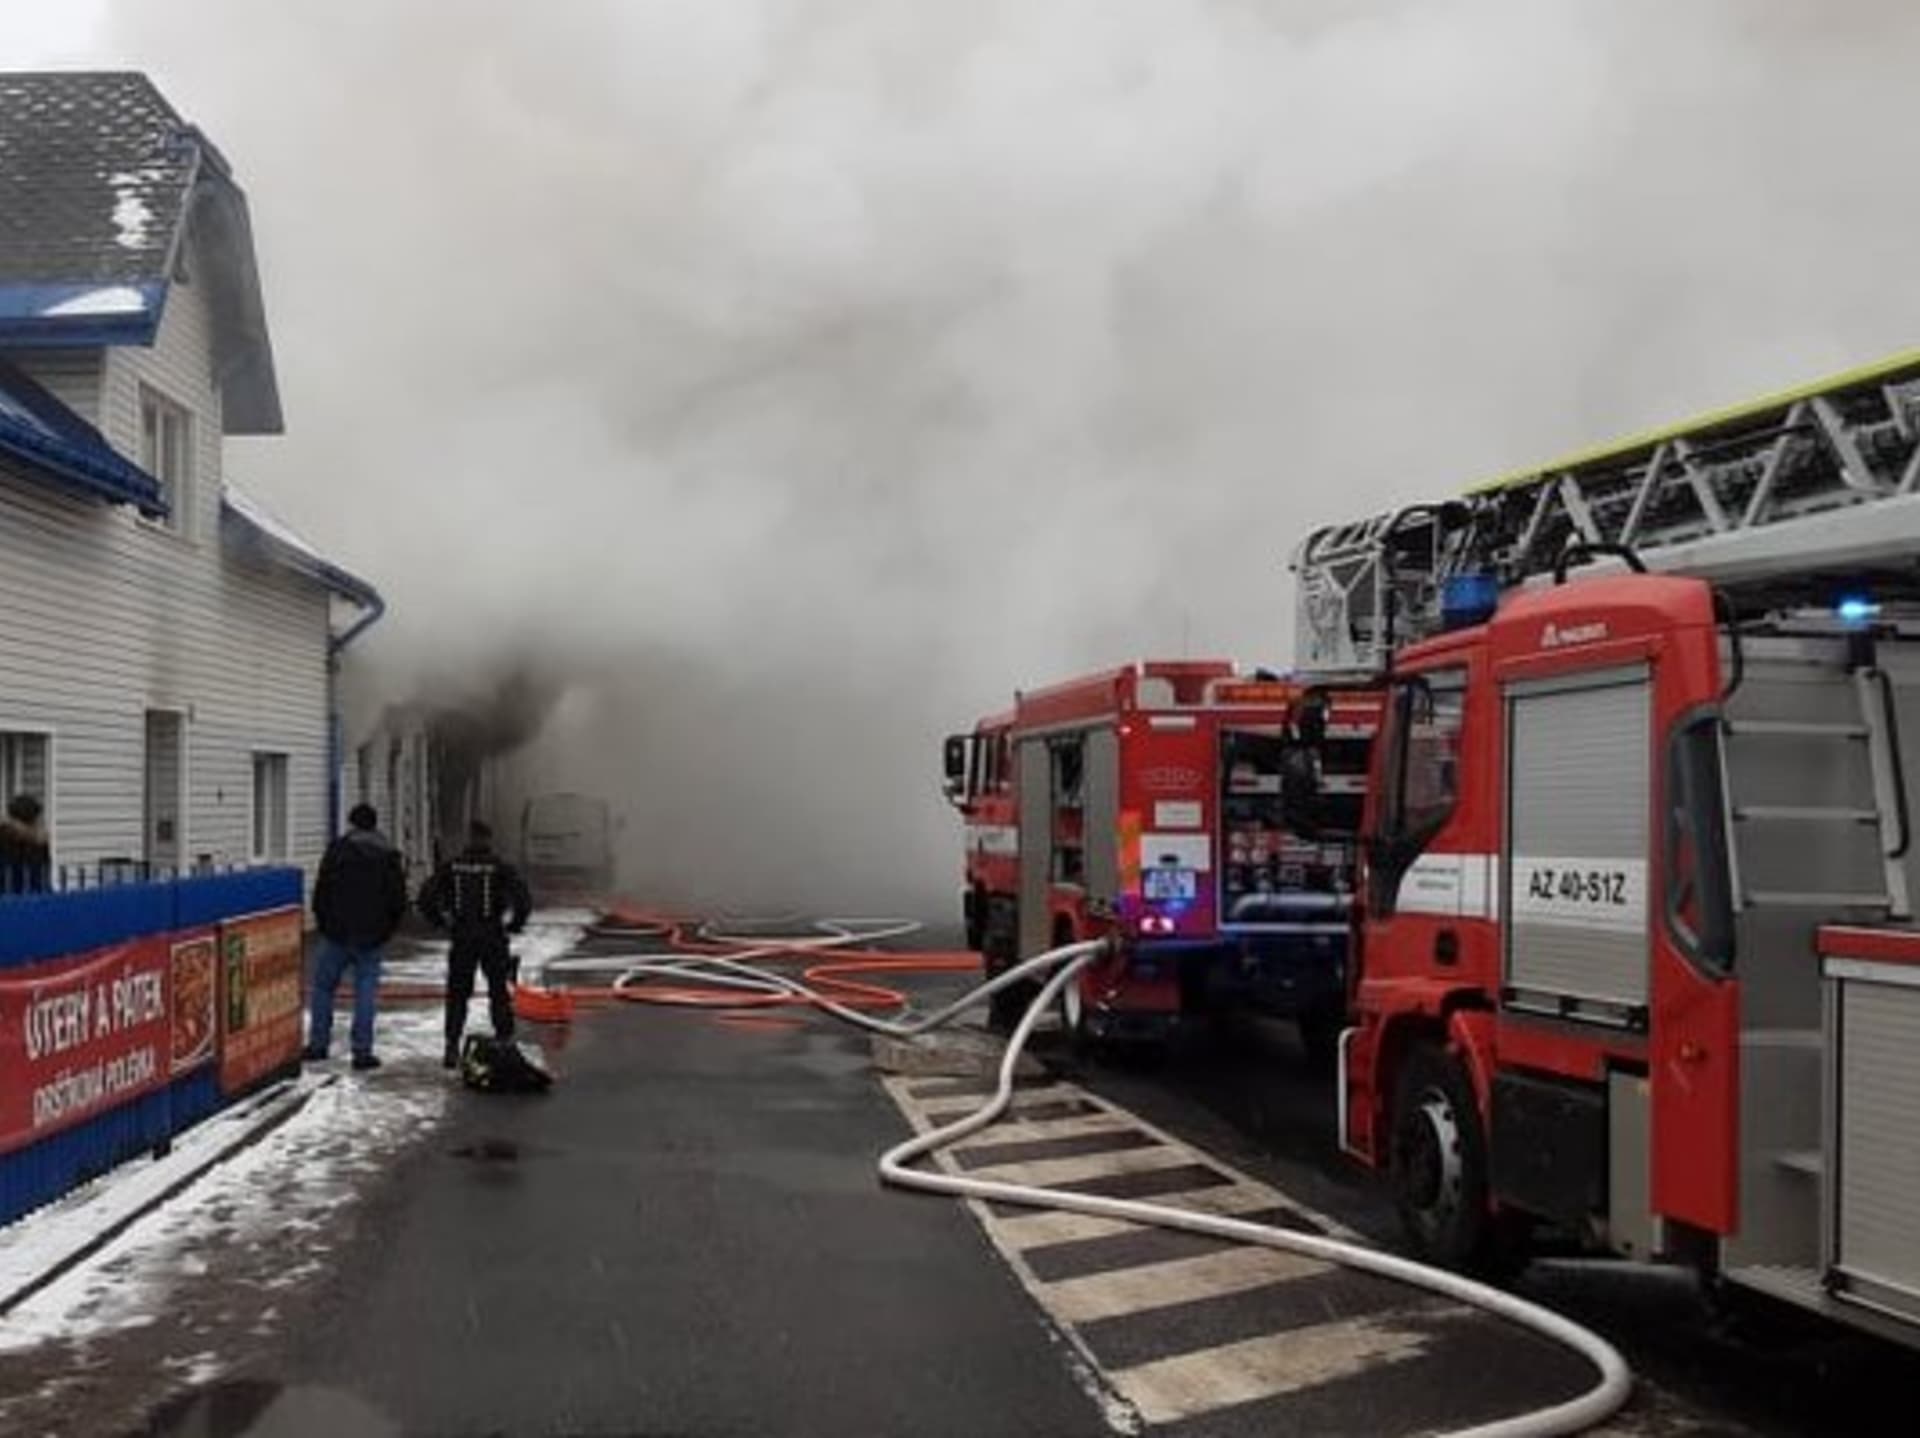 Hasiči v Jablonci nad Nisou likvidují rozsáhlý požár autoservisu.